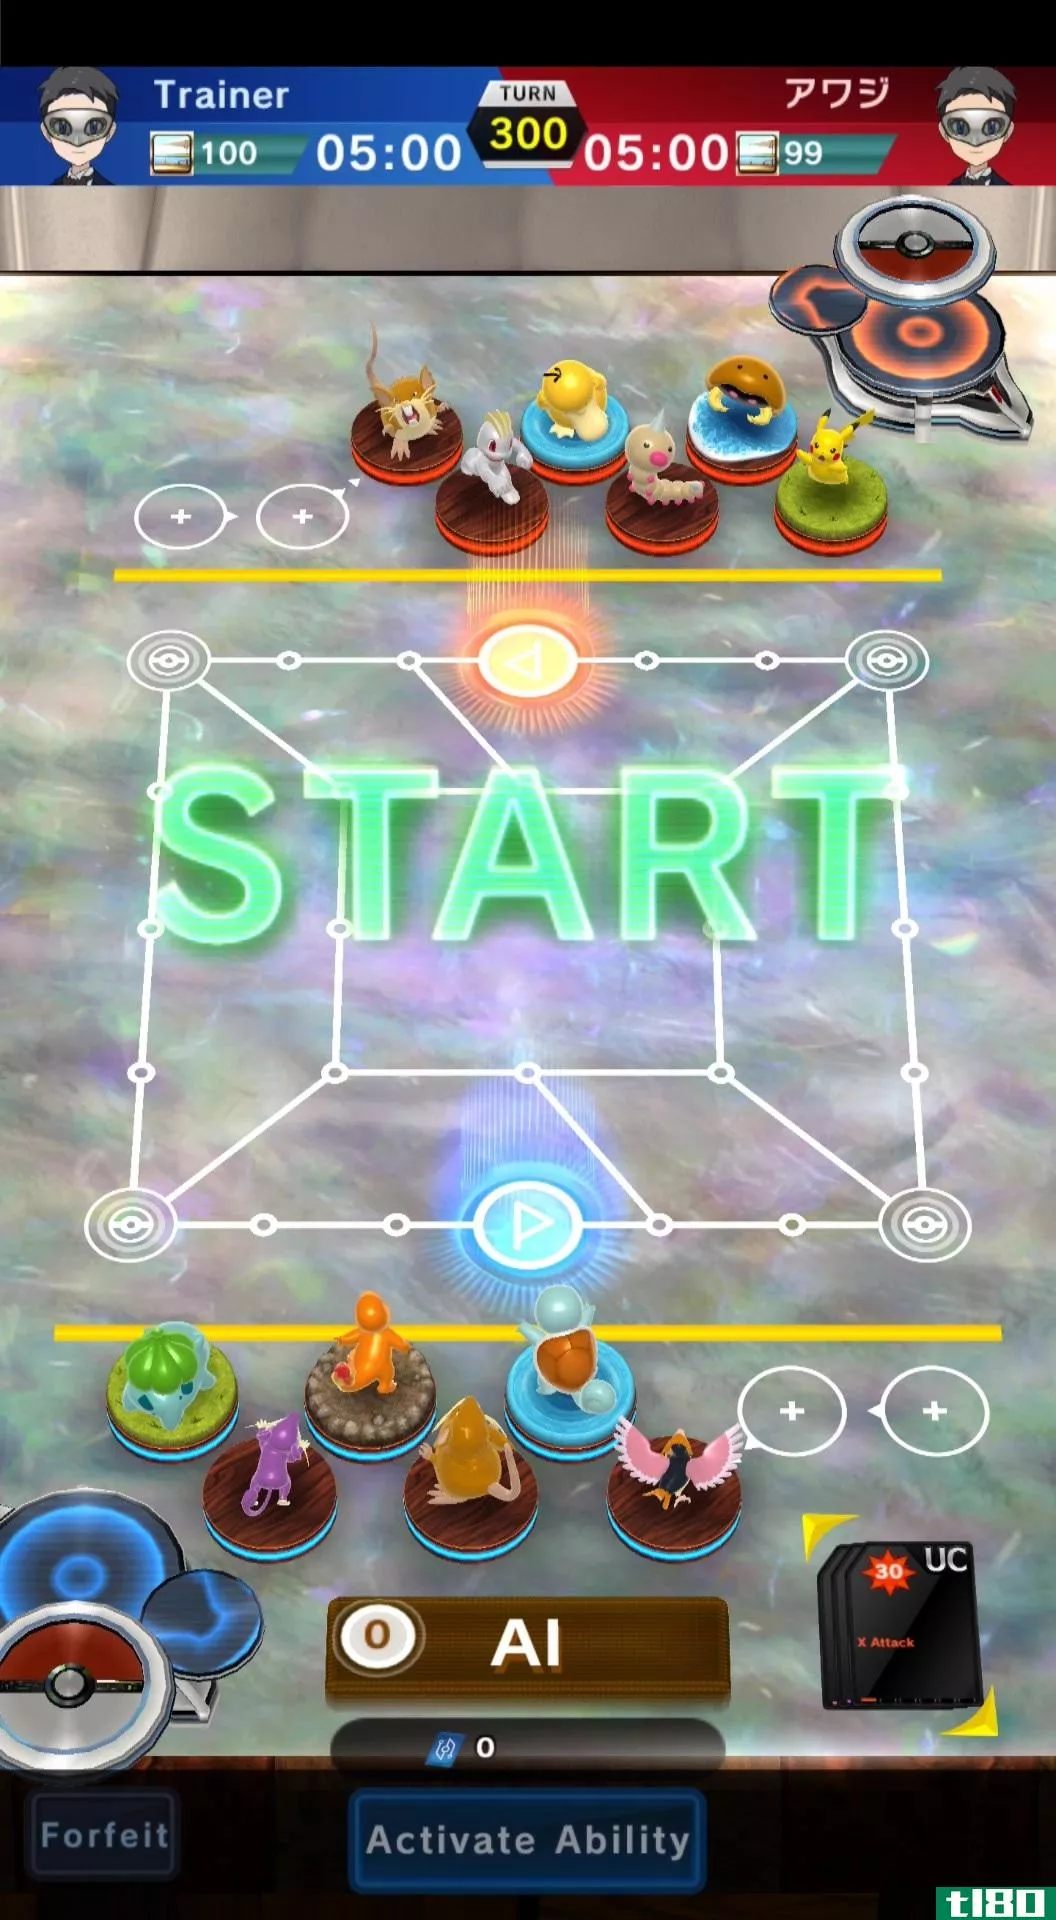 戳émon duel是一款适用于手机的精巧数字棋盘游戏